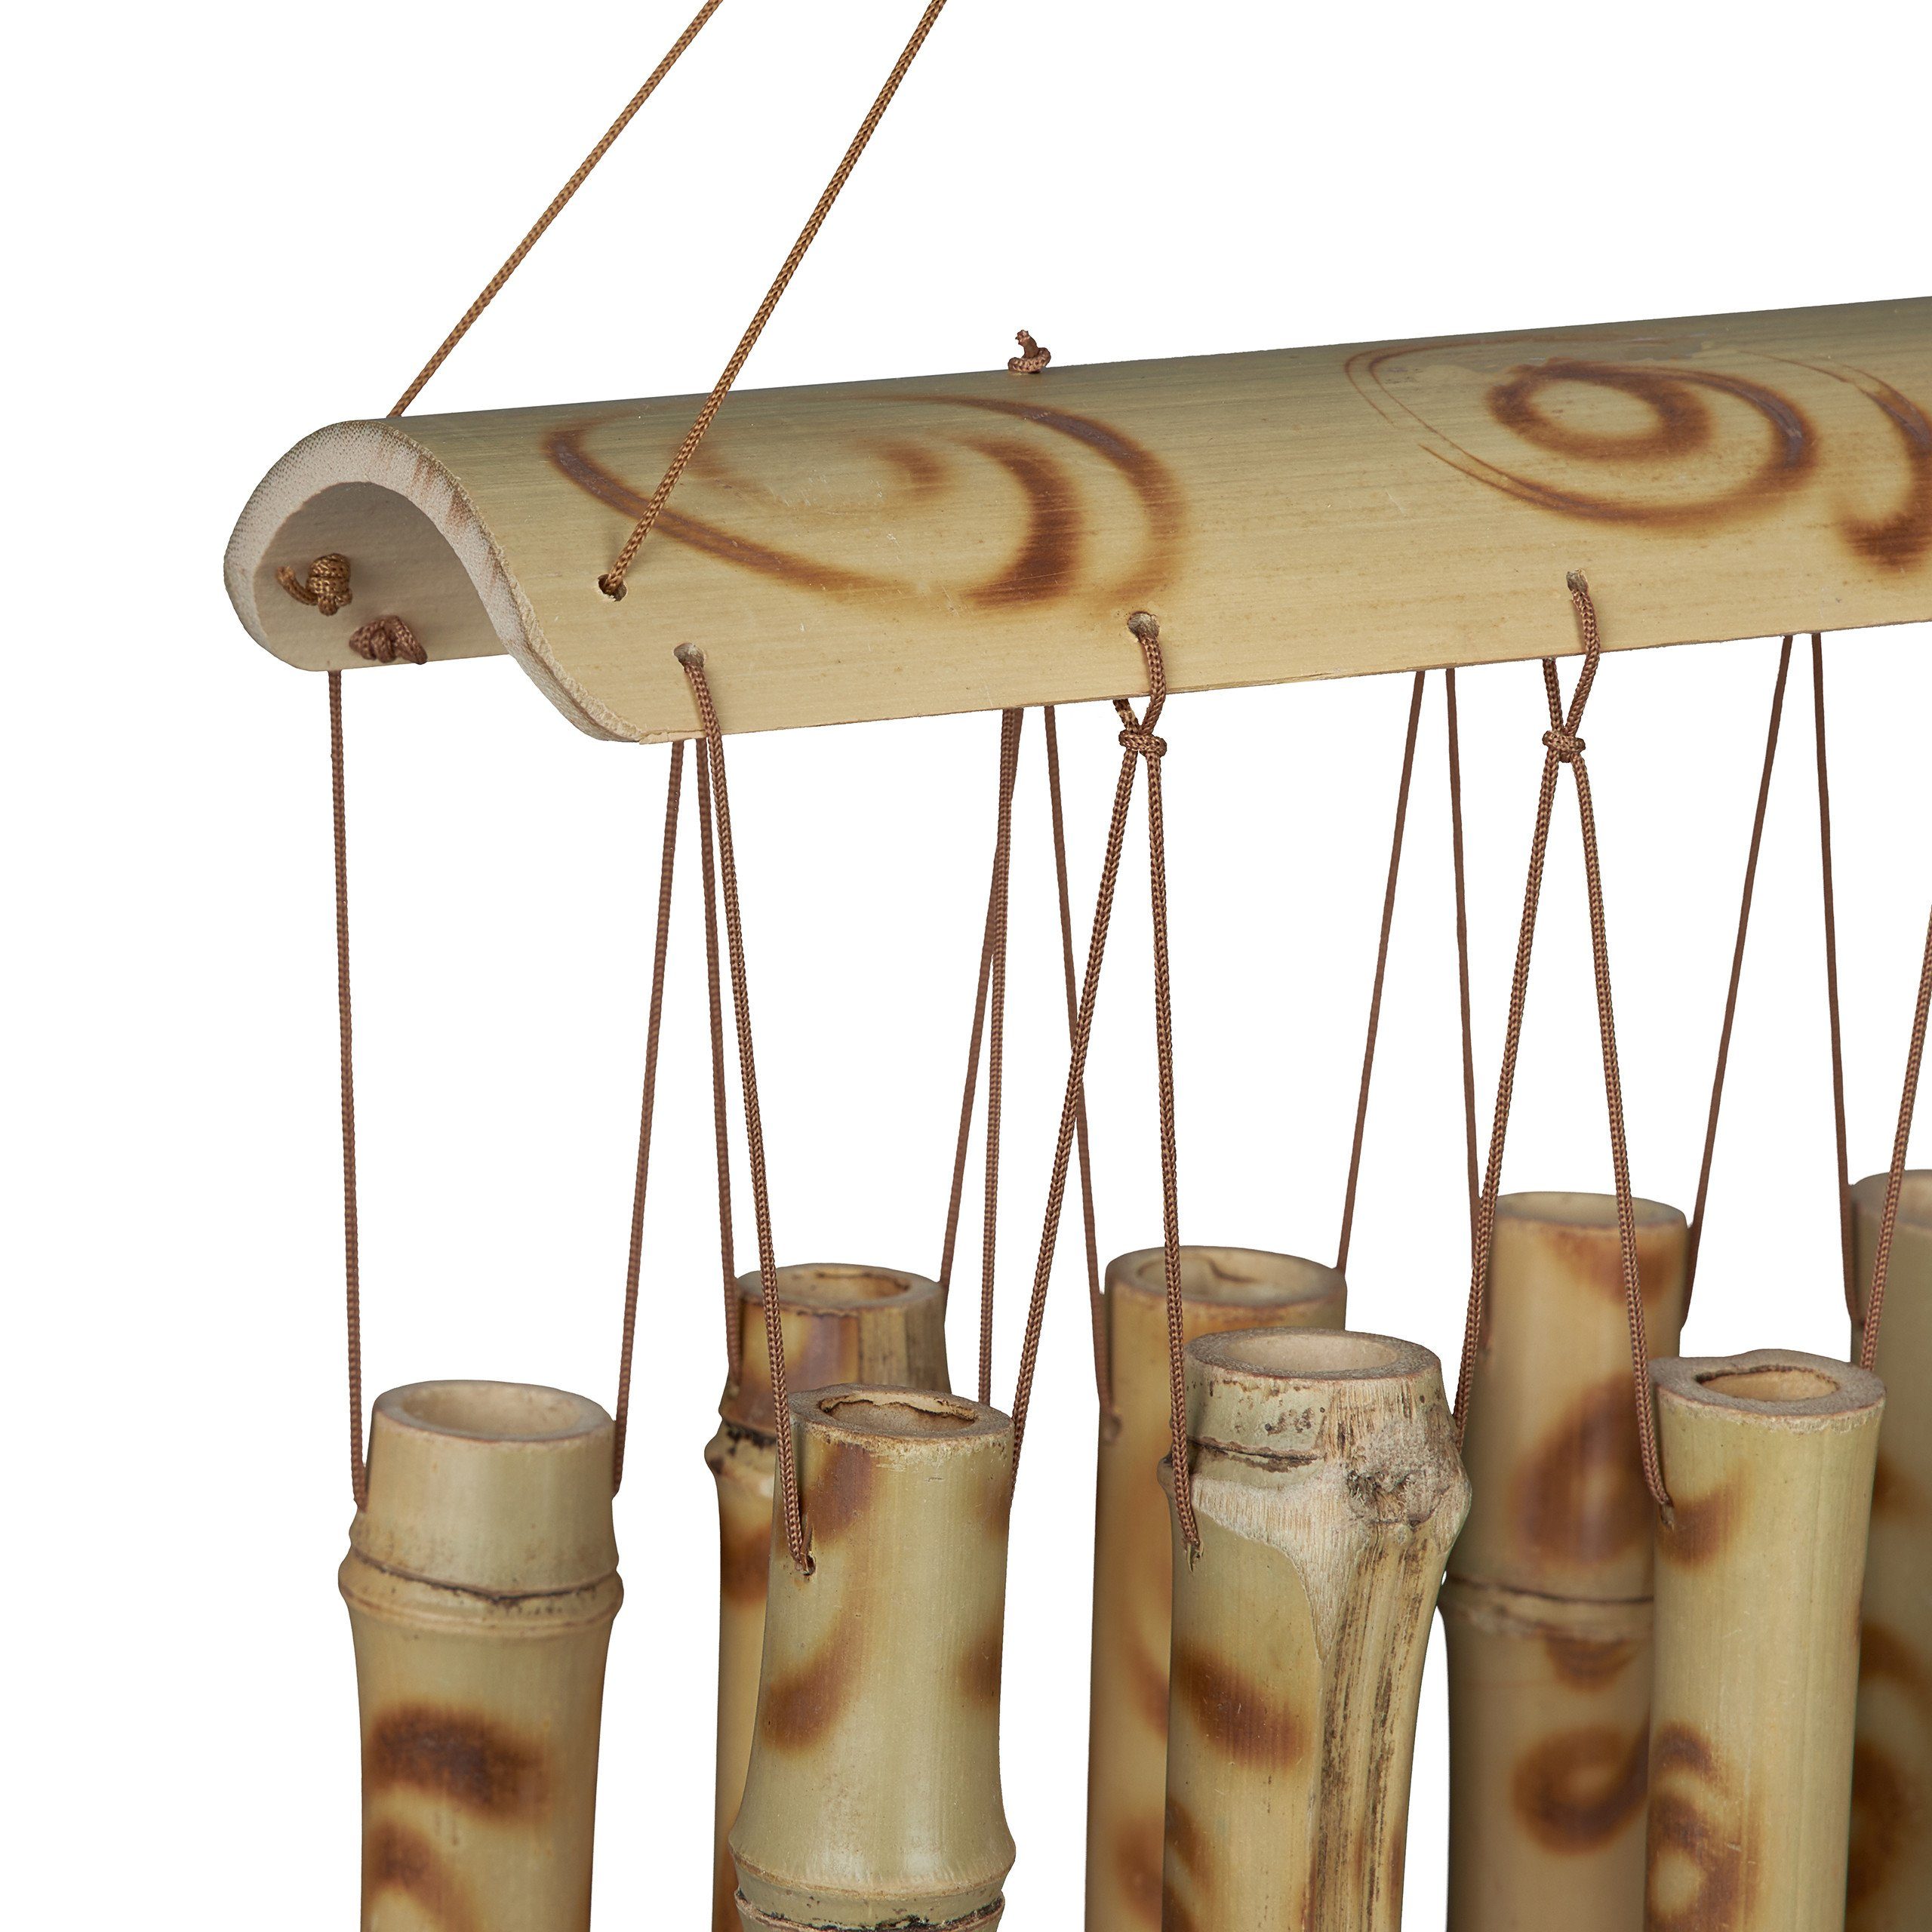 relaxdays Windspiel Bambus Windspiel mit Röhrchen 10